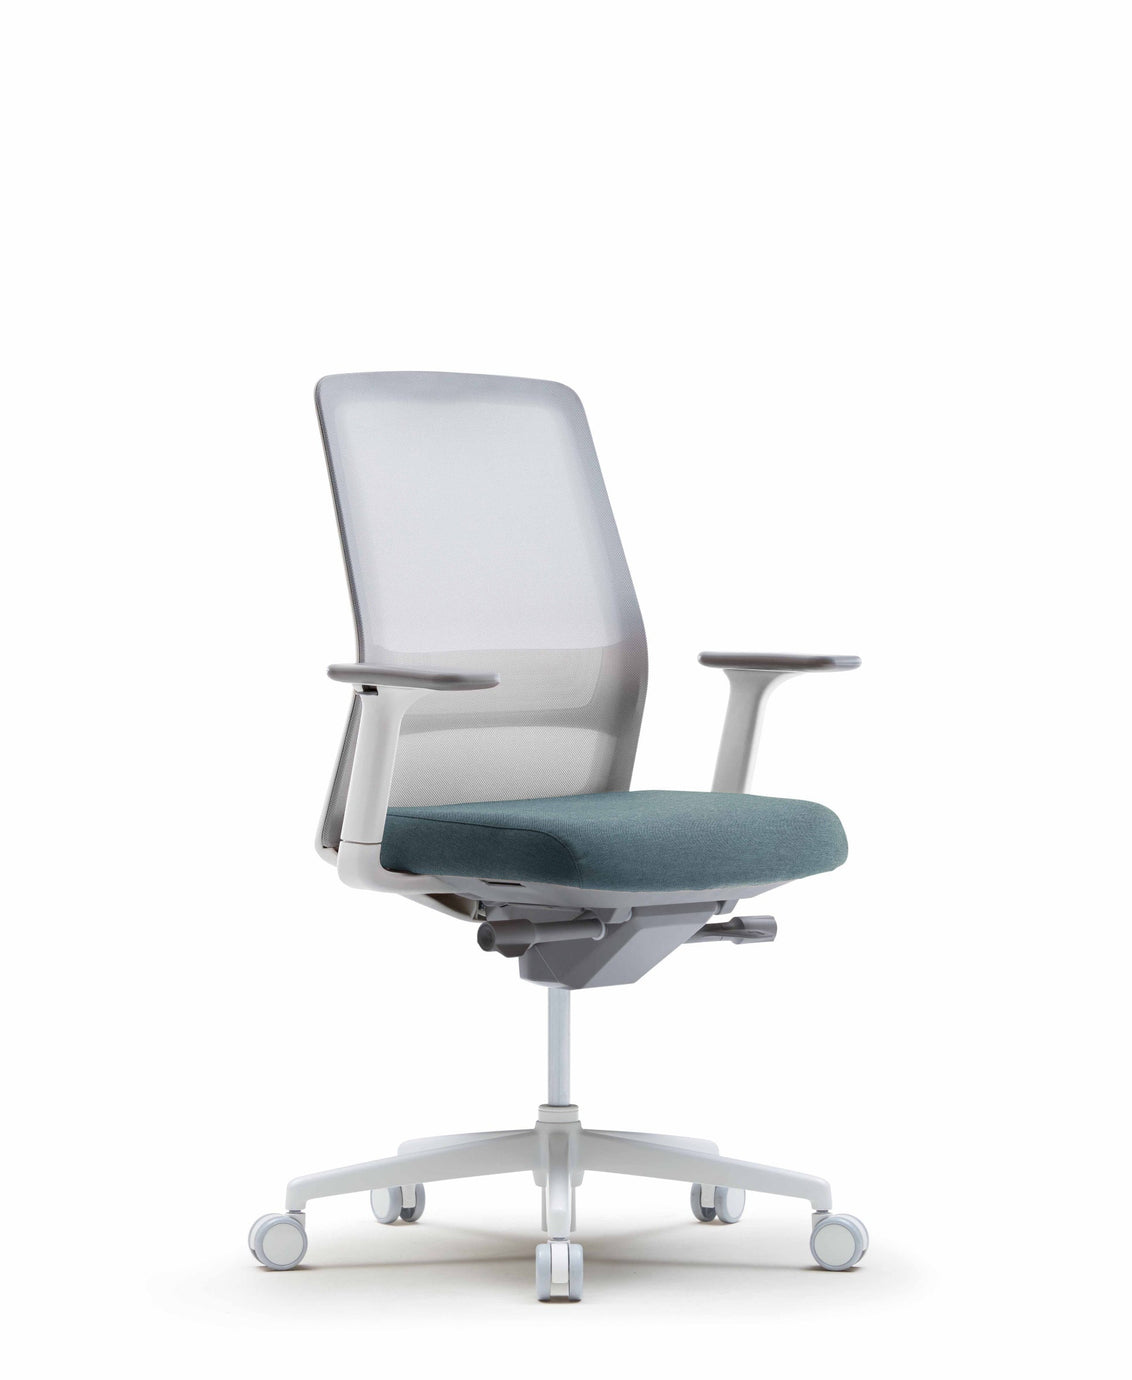 FURSYS SIDIZ T40 White Frame Home Office Desk Chair - SIHOO AustraliaFURSYS SIDIZ T40 White Frame Home Office Desk Chair